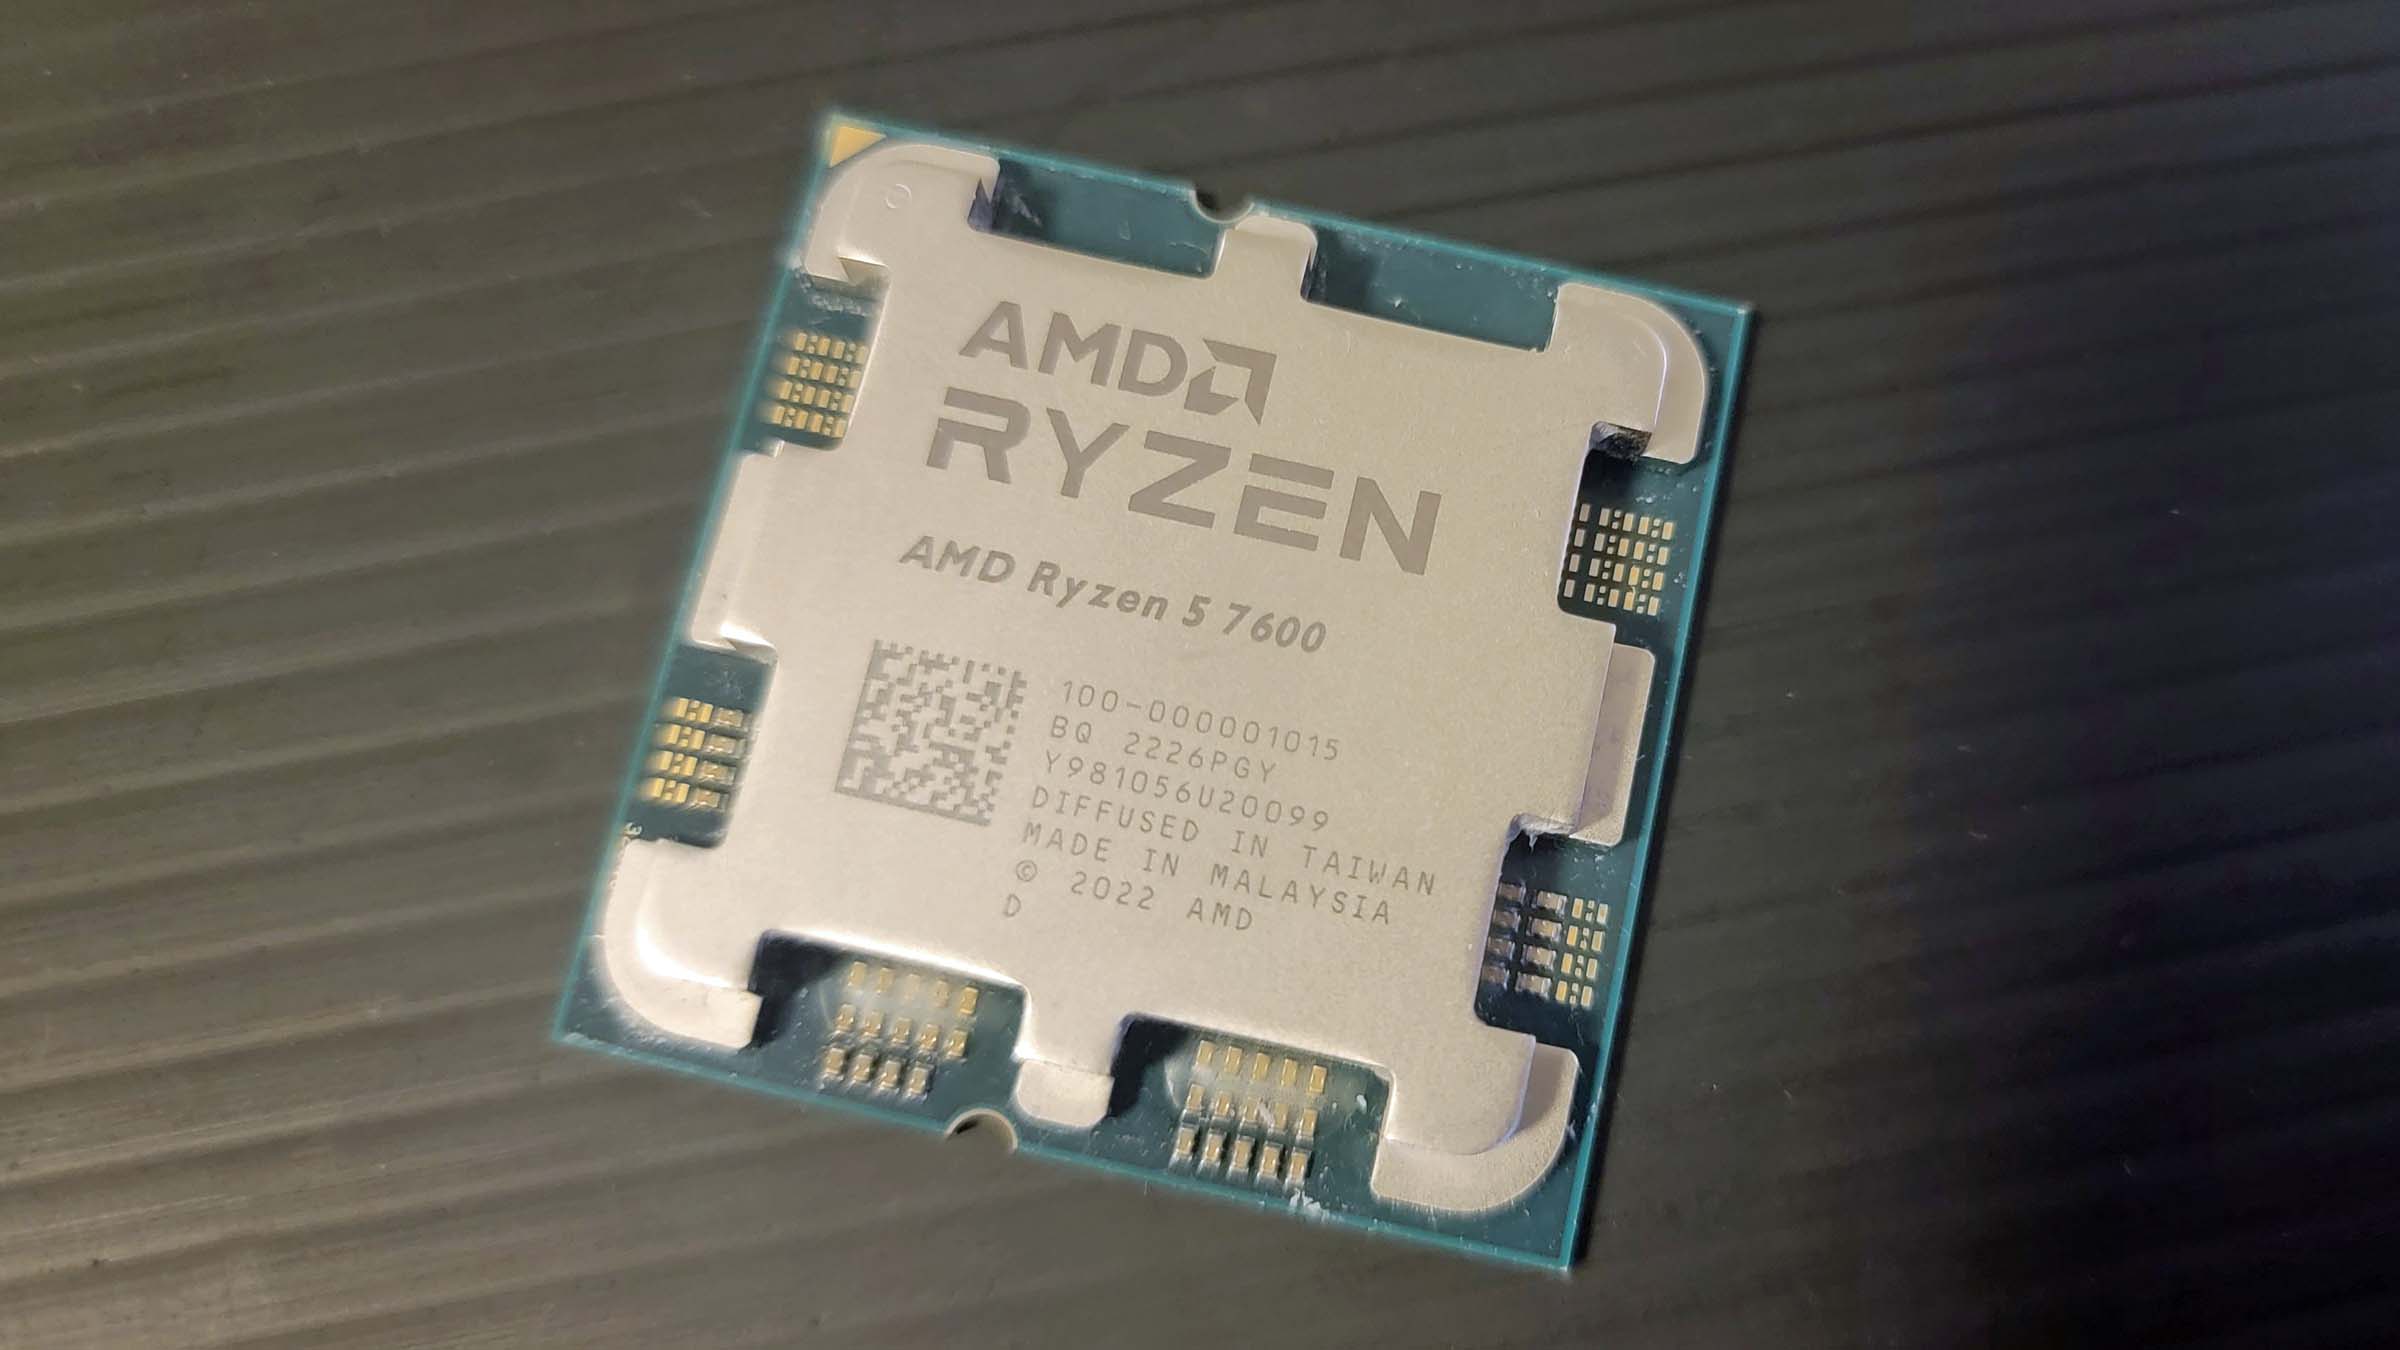 AMD Ryzen 9 7900, Ryzen 7 7700, and Ryzen 5 7600 Review: Zen 4 